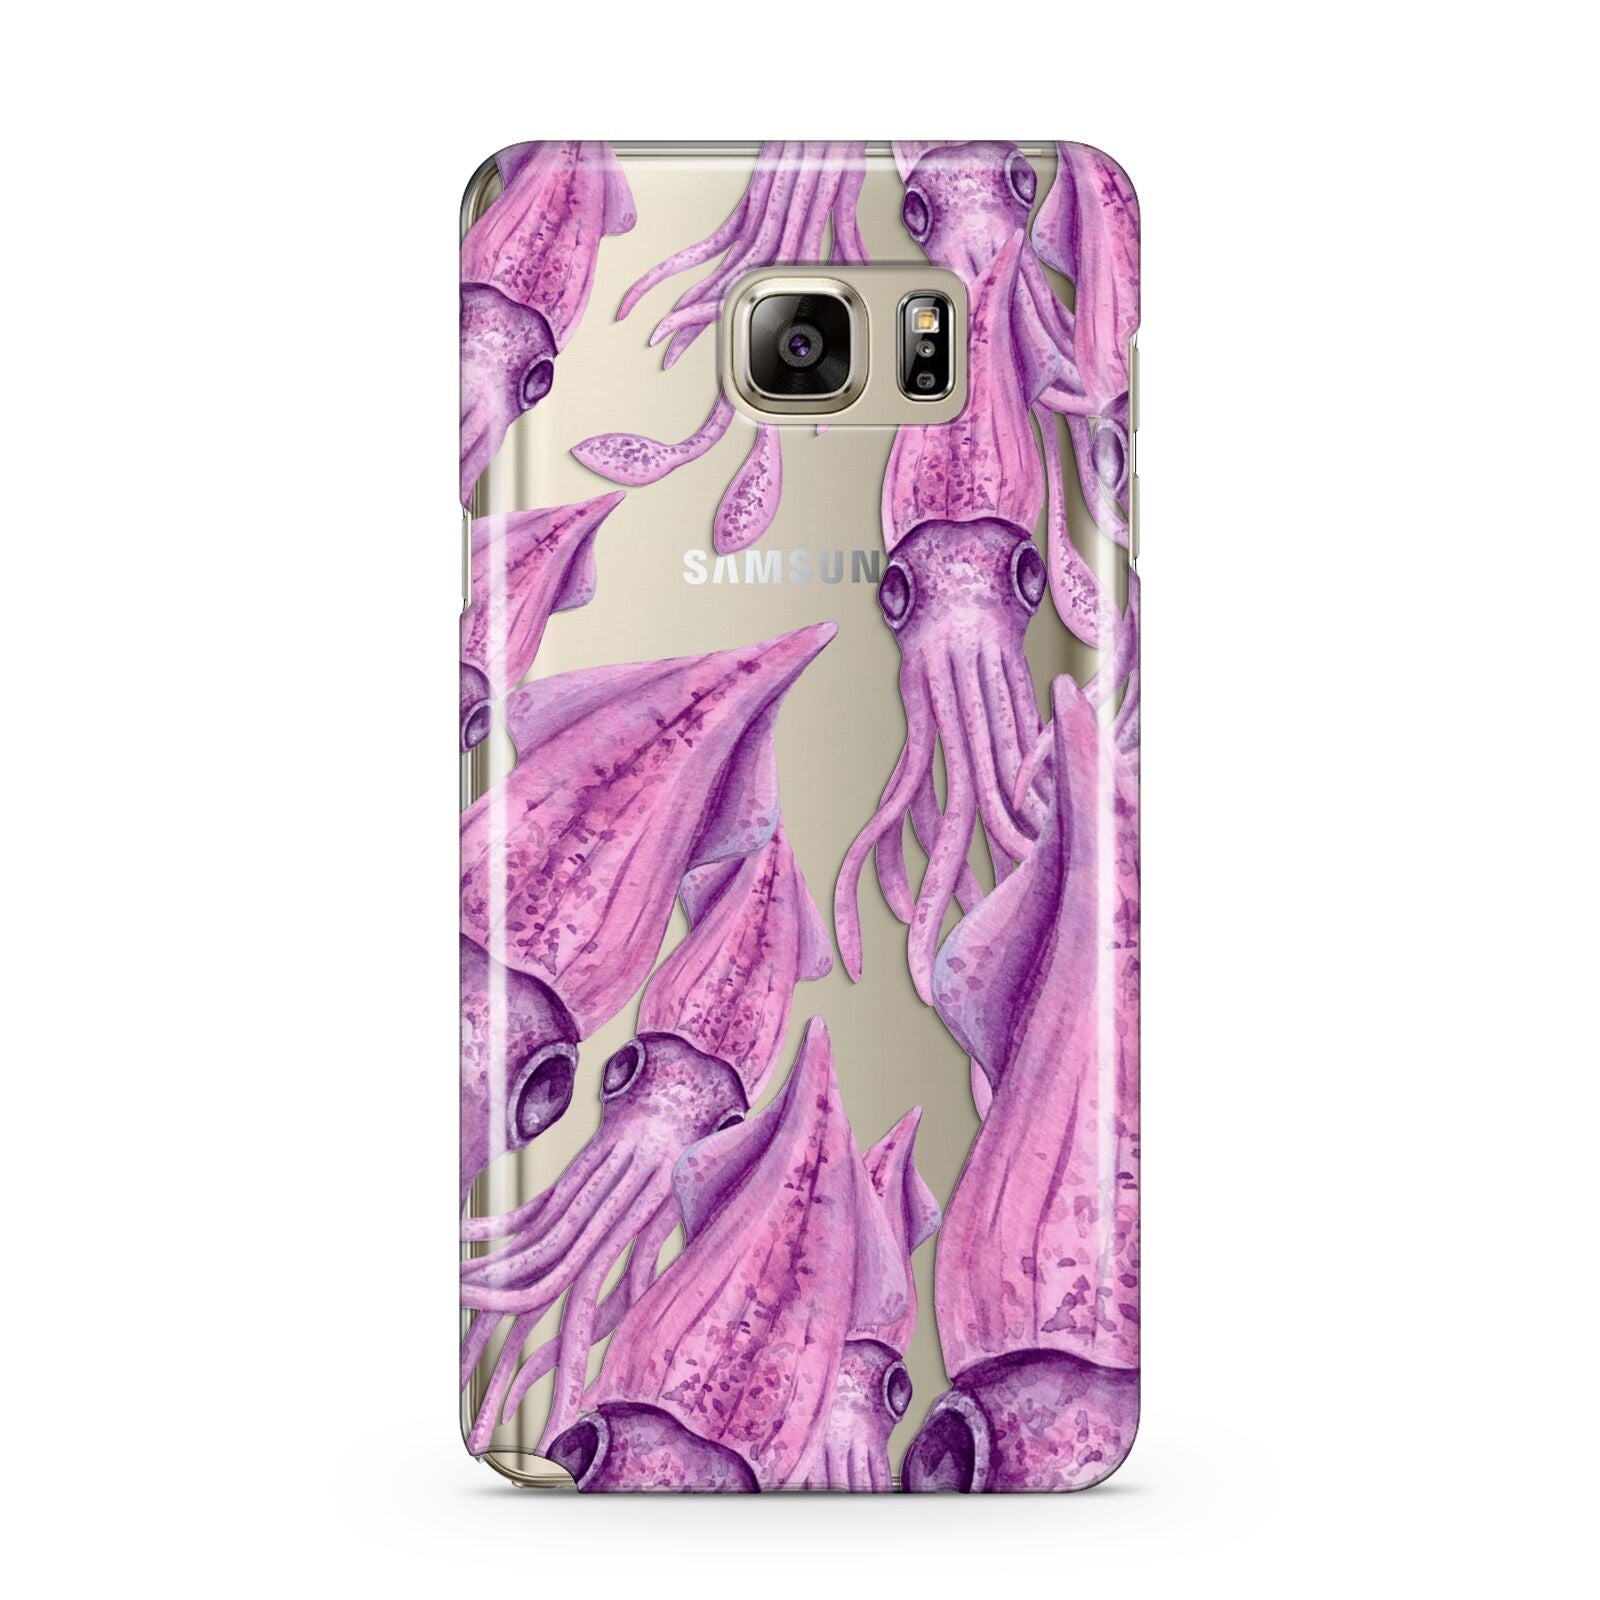 Squid Samsung Galaxy Note 5 Case